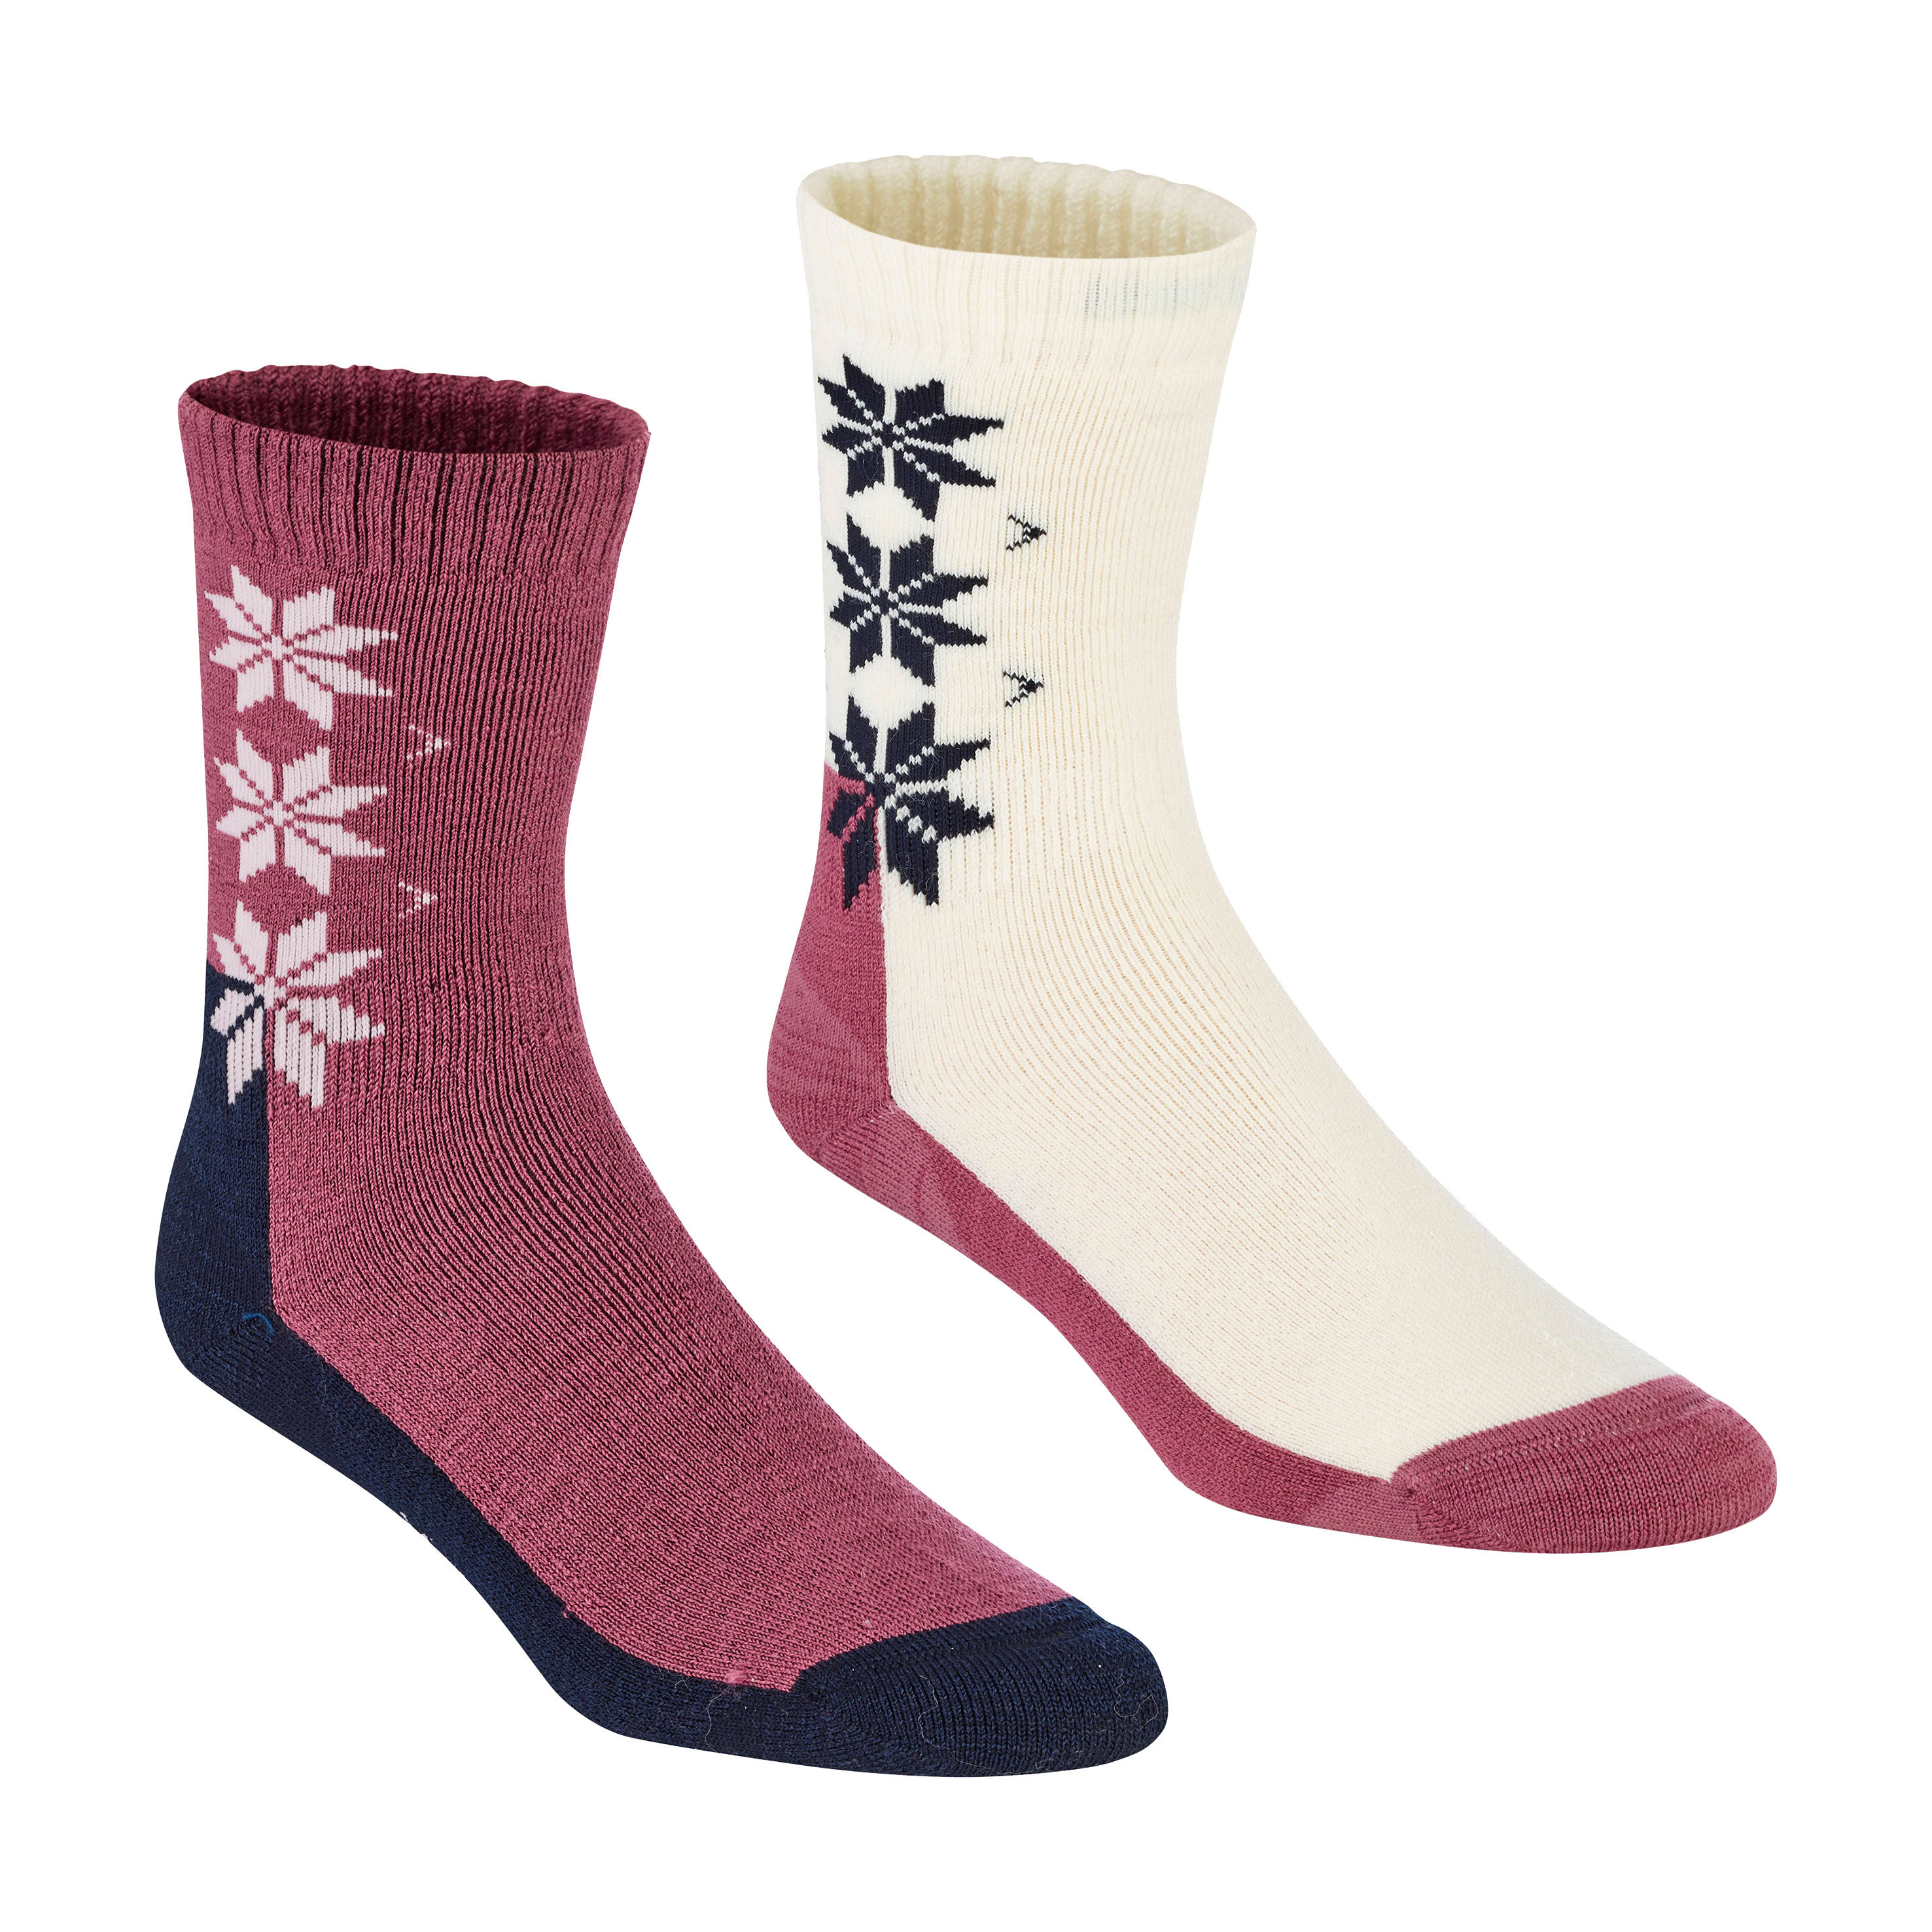 Køb Kari Traa Wool Sock 2-pack